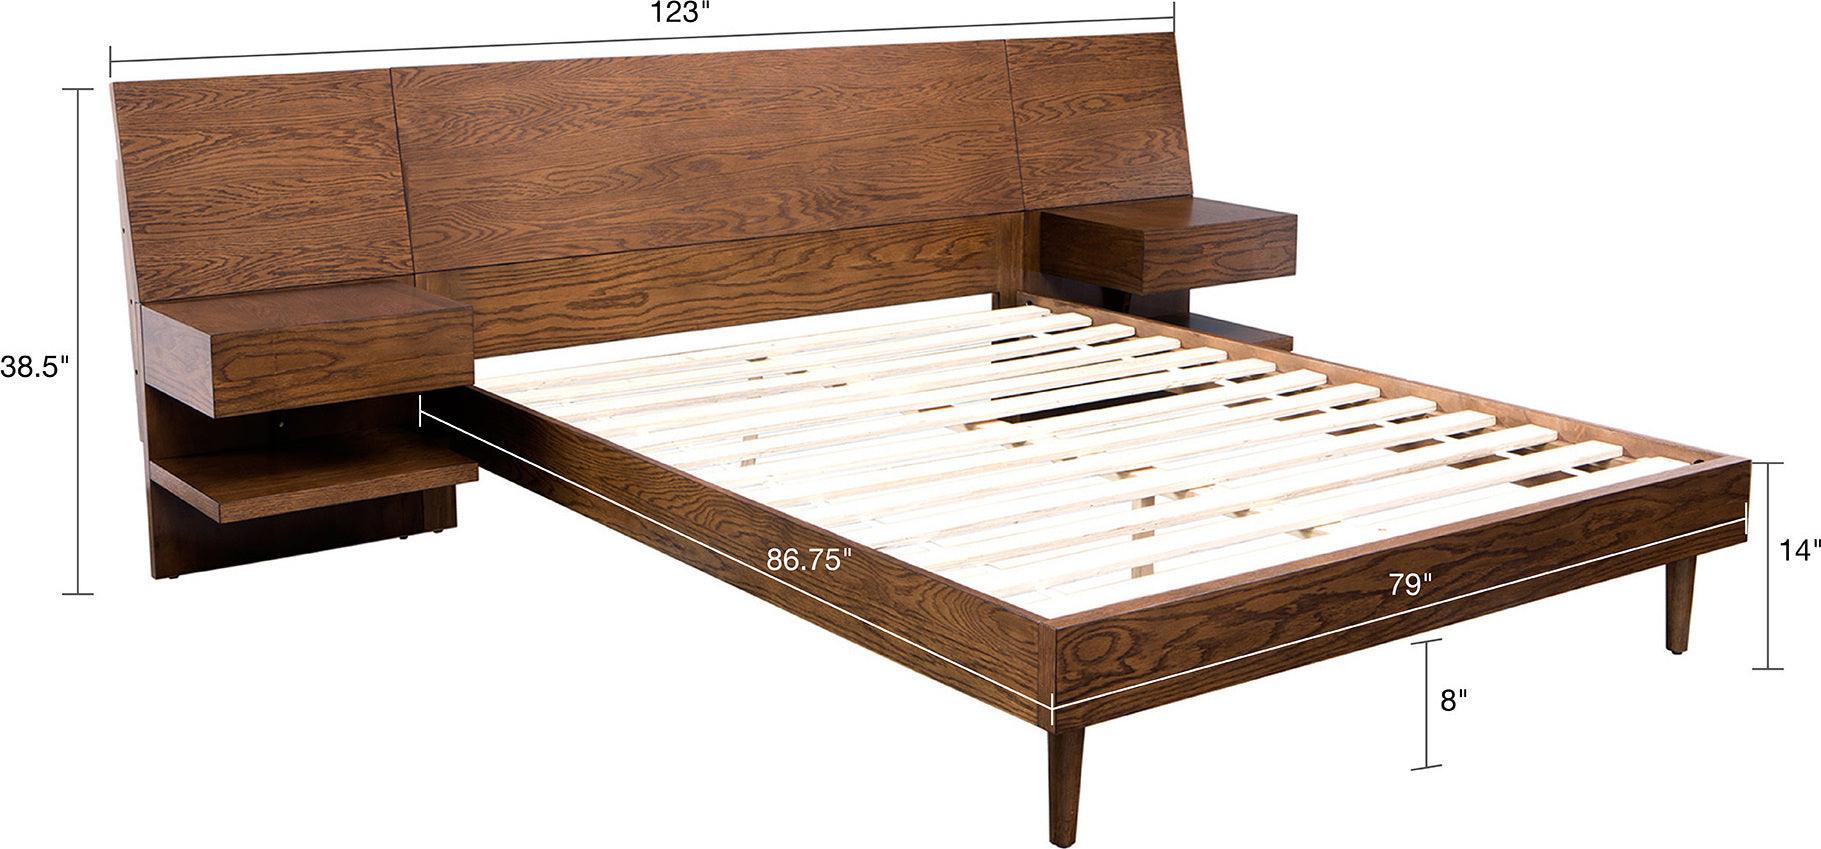 Olliix.com Beds - Clark king Bed with 2 Nightstand Pecan